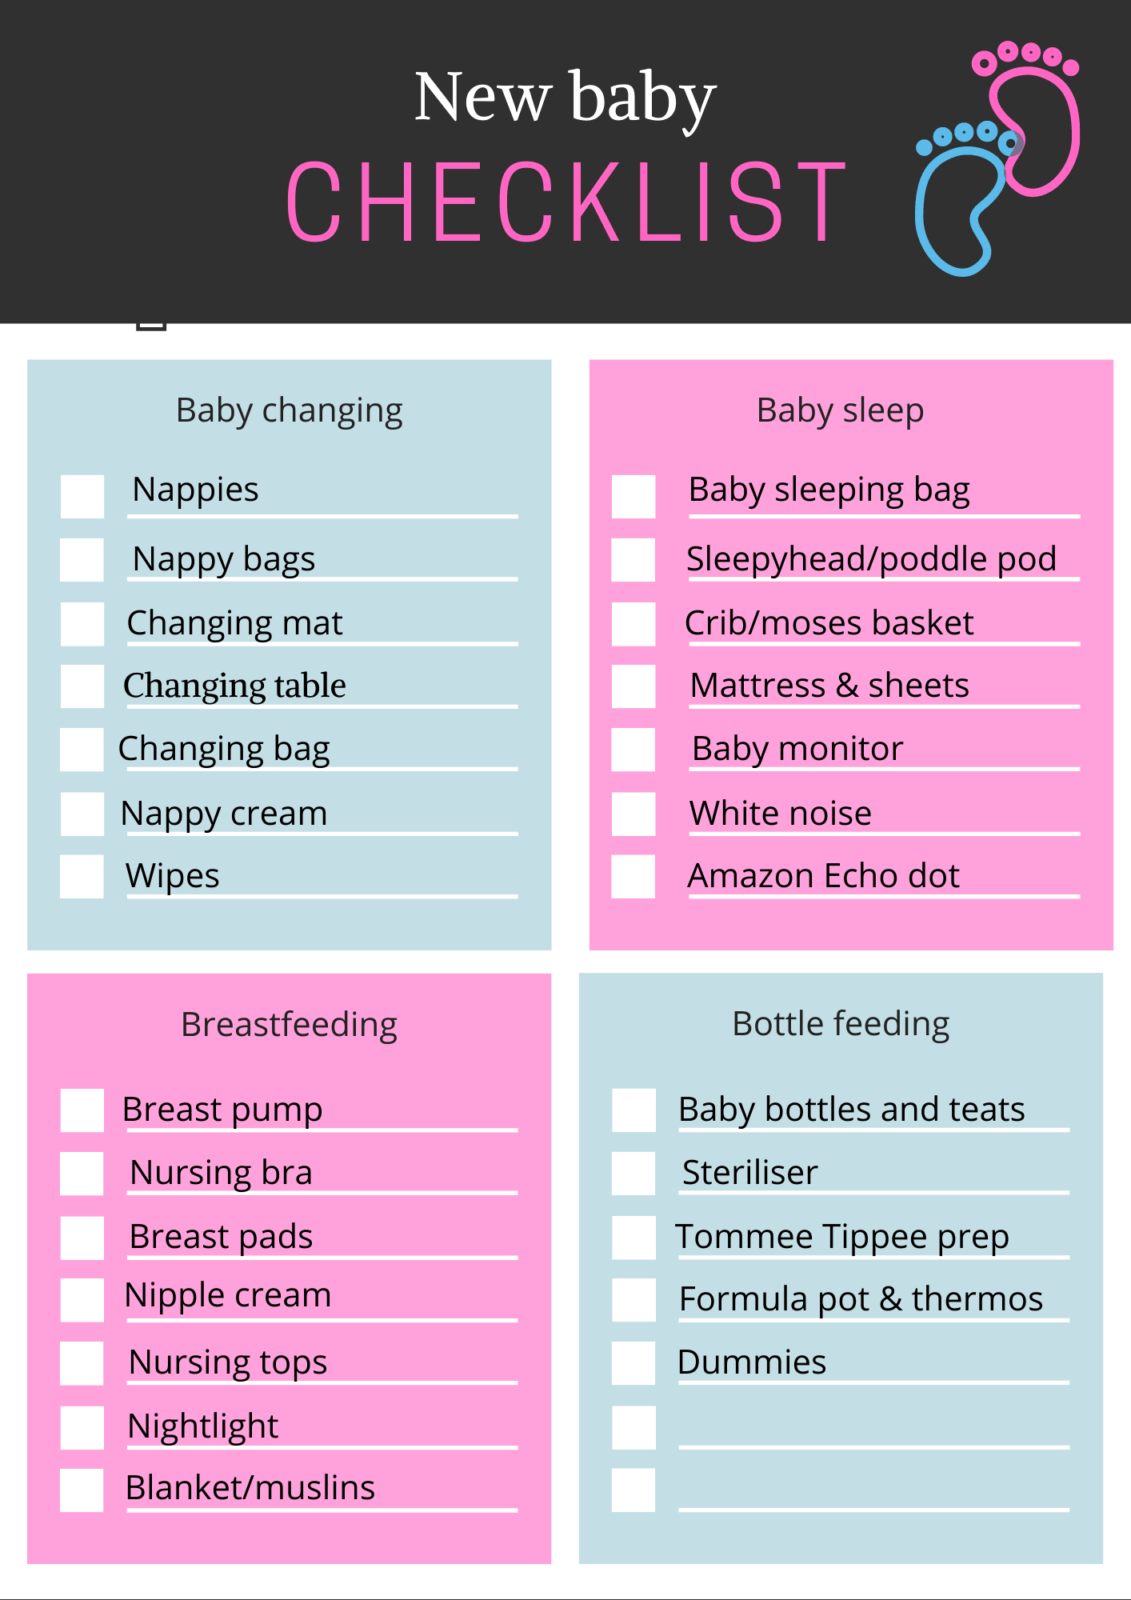 new-baby-checklist-my-newborn-essentials-this-bristol-brood